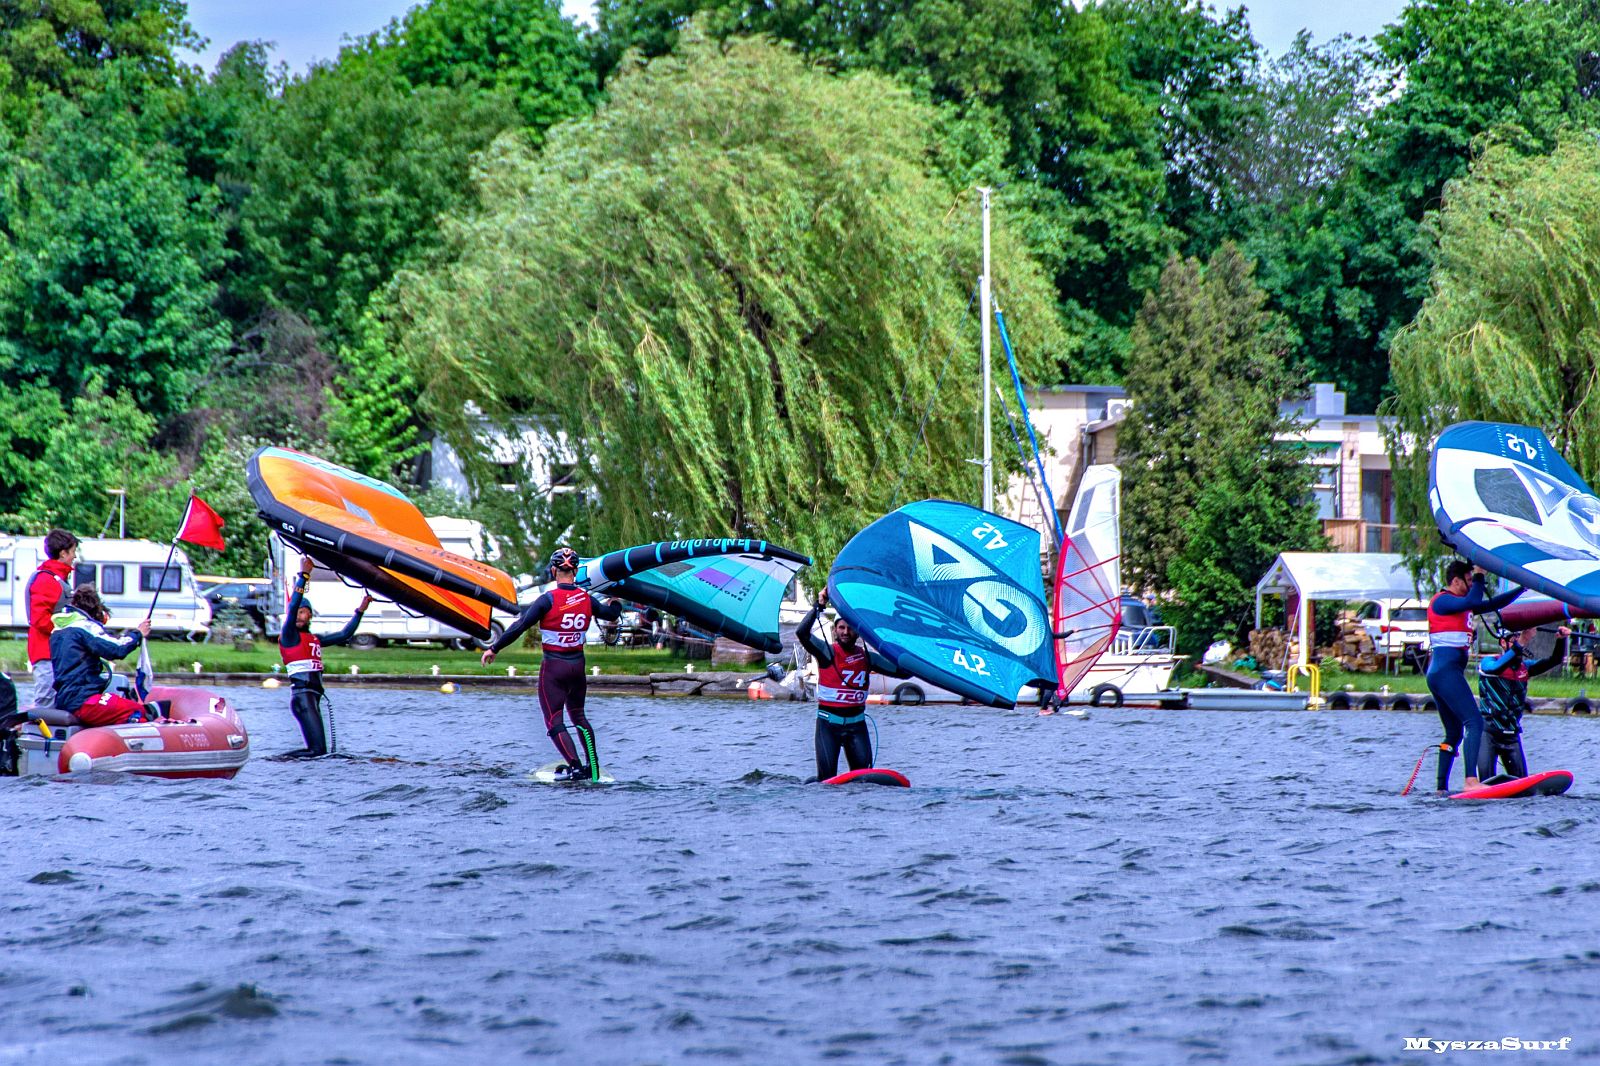 Zawodnicy na deskach windsurfingowych na jeziorze